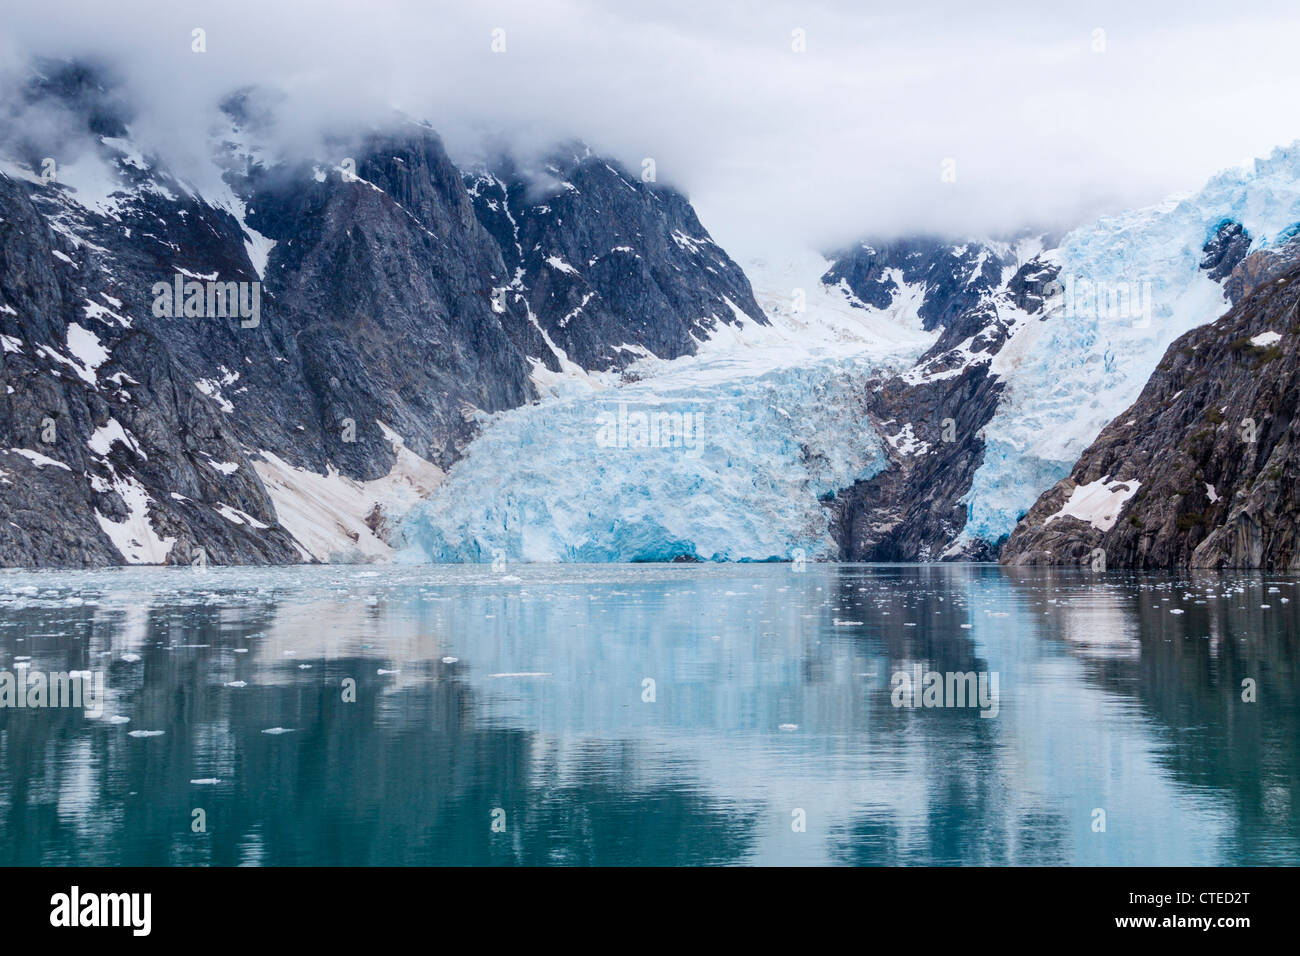 Northwestern ghiacciaio nel fiordo Nord-occidentale del Parco nazionale di Kenai Fjords in Alaska. Foto Stock